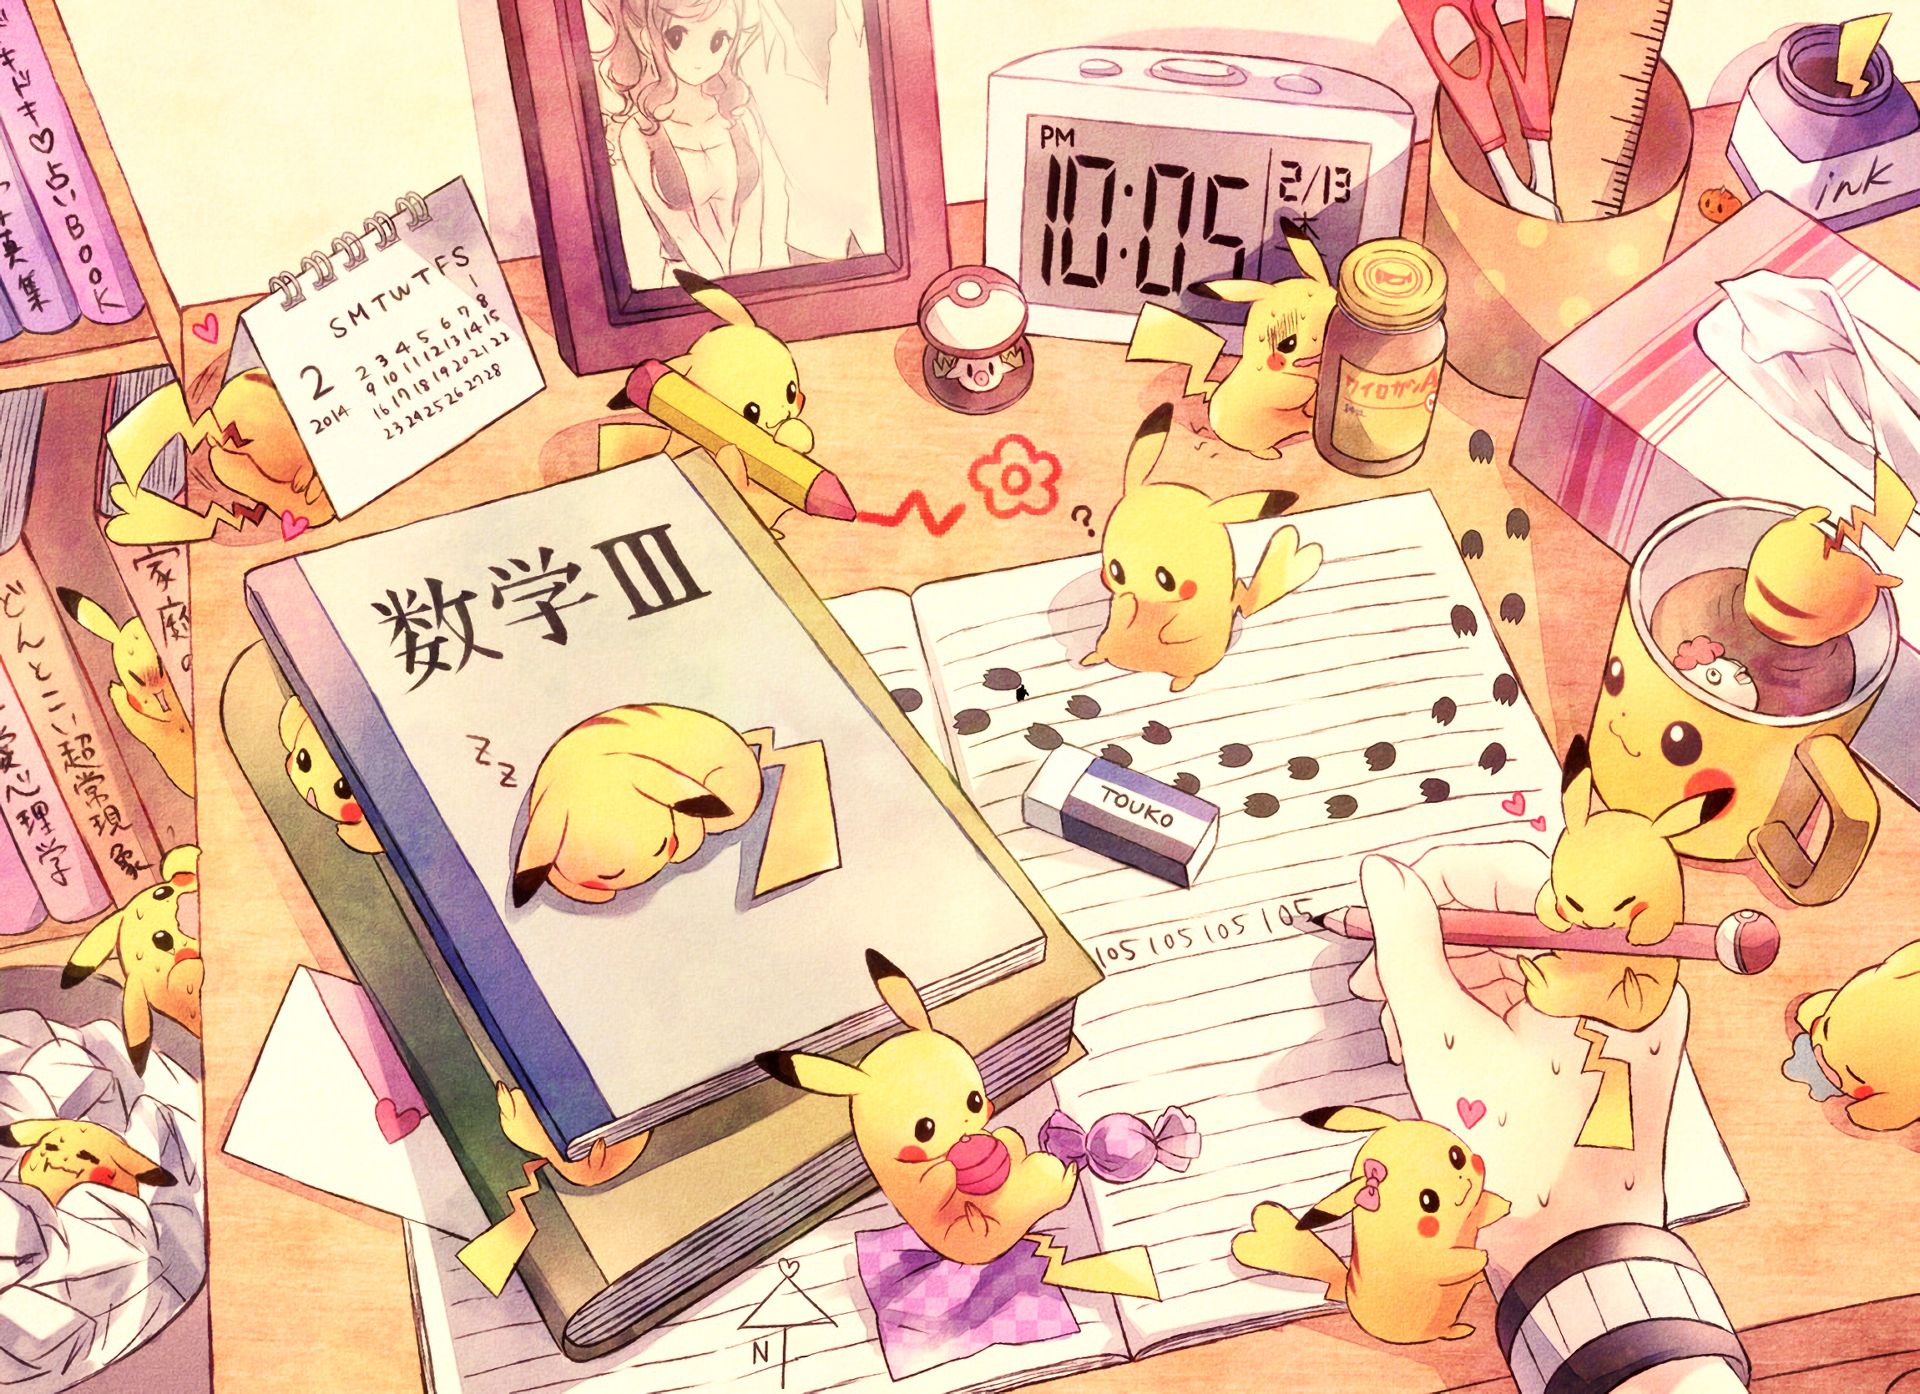 Free download wallpaper Anime, Pokémon, Pikachu on your PC desktop